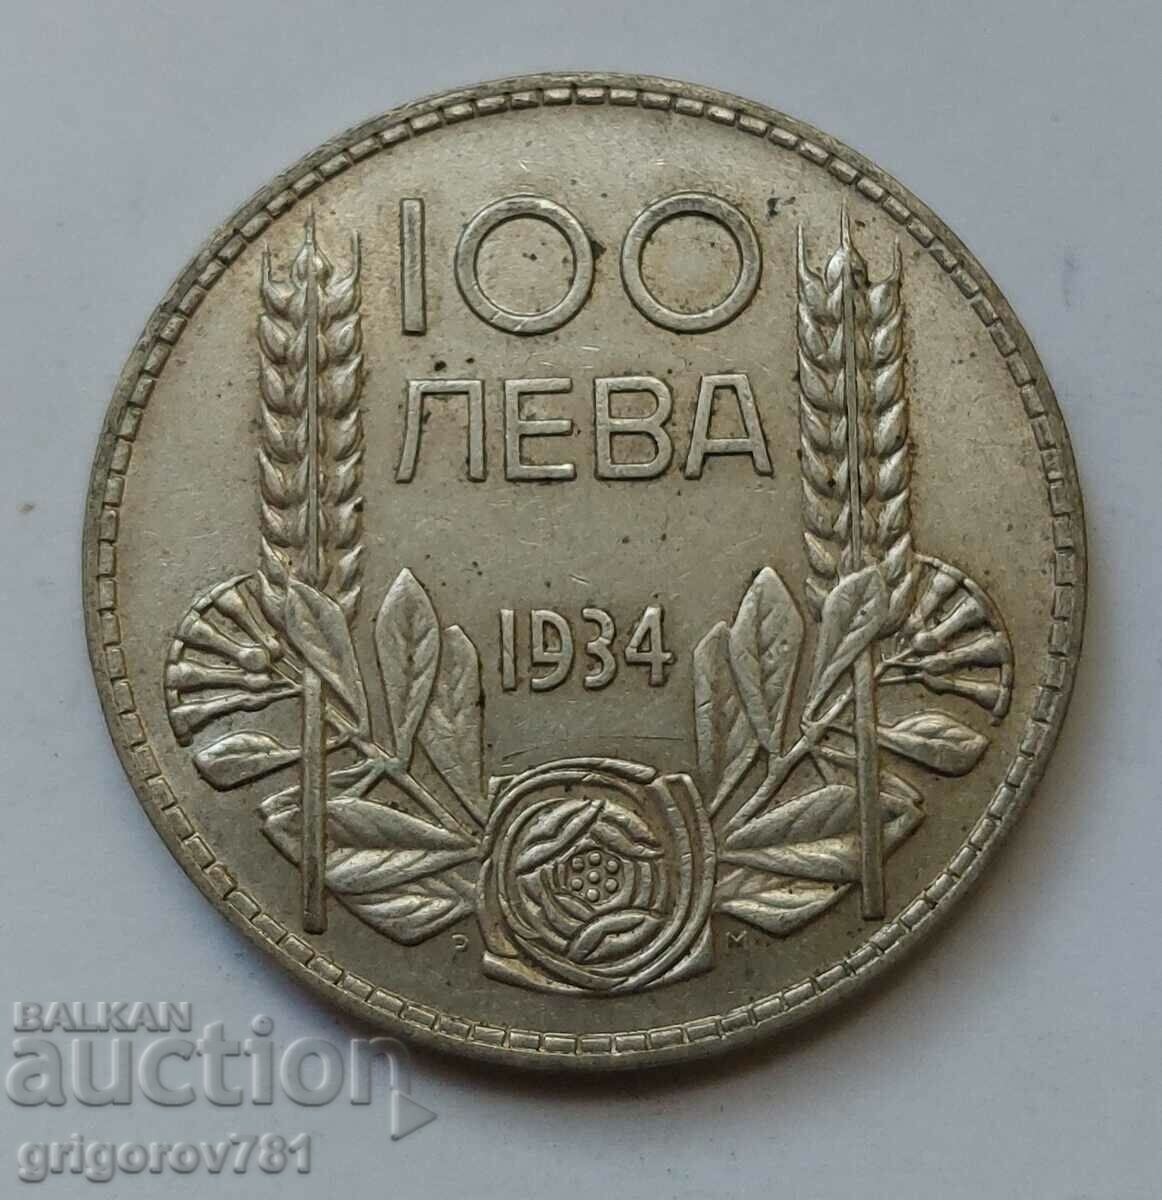 100 leva silver Bulgaria 1934 - silver coin #100